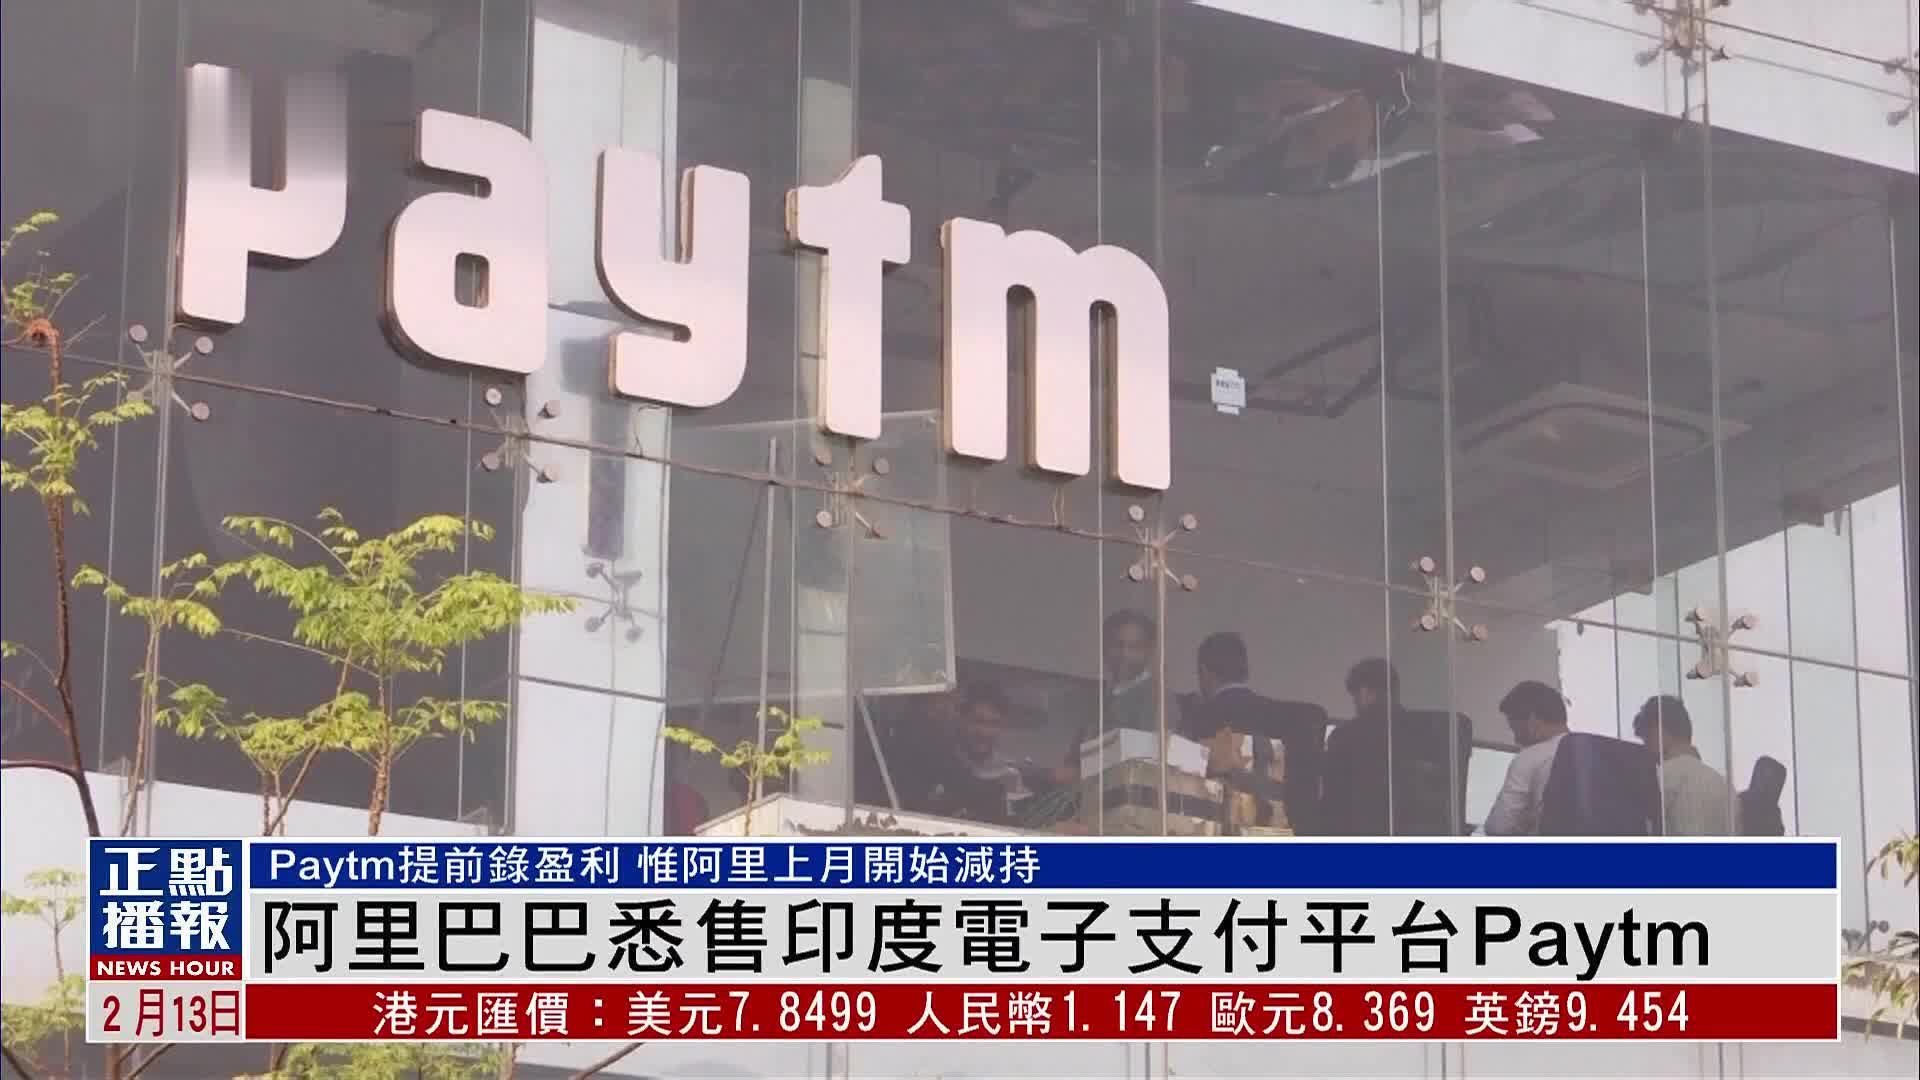 阿里巴巴出售印度电子支付公司Paytm所有股份